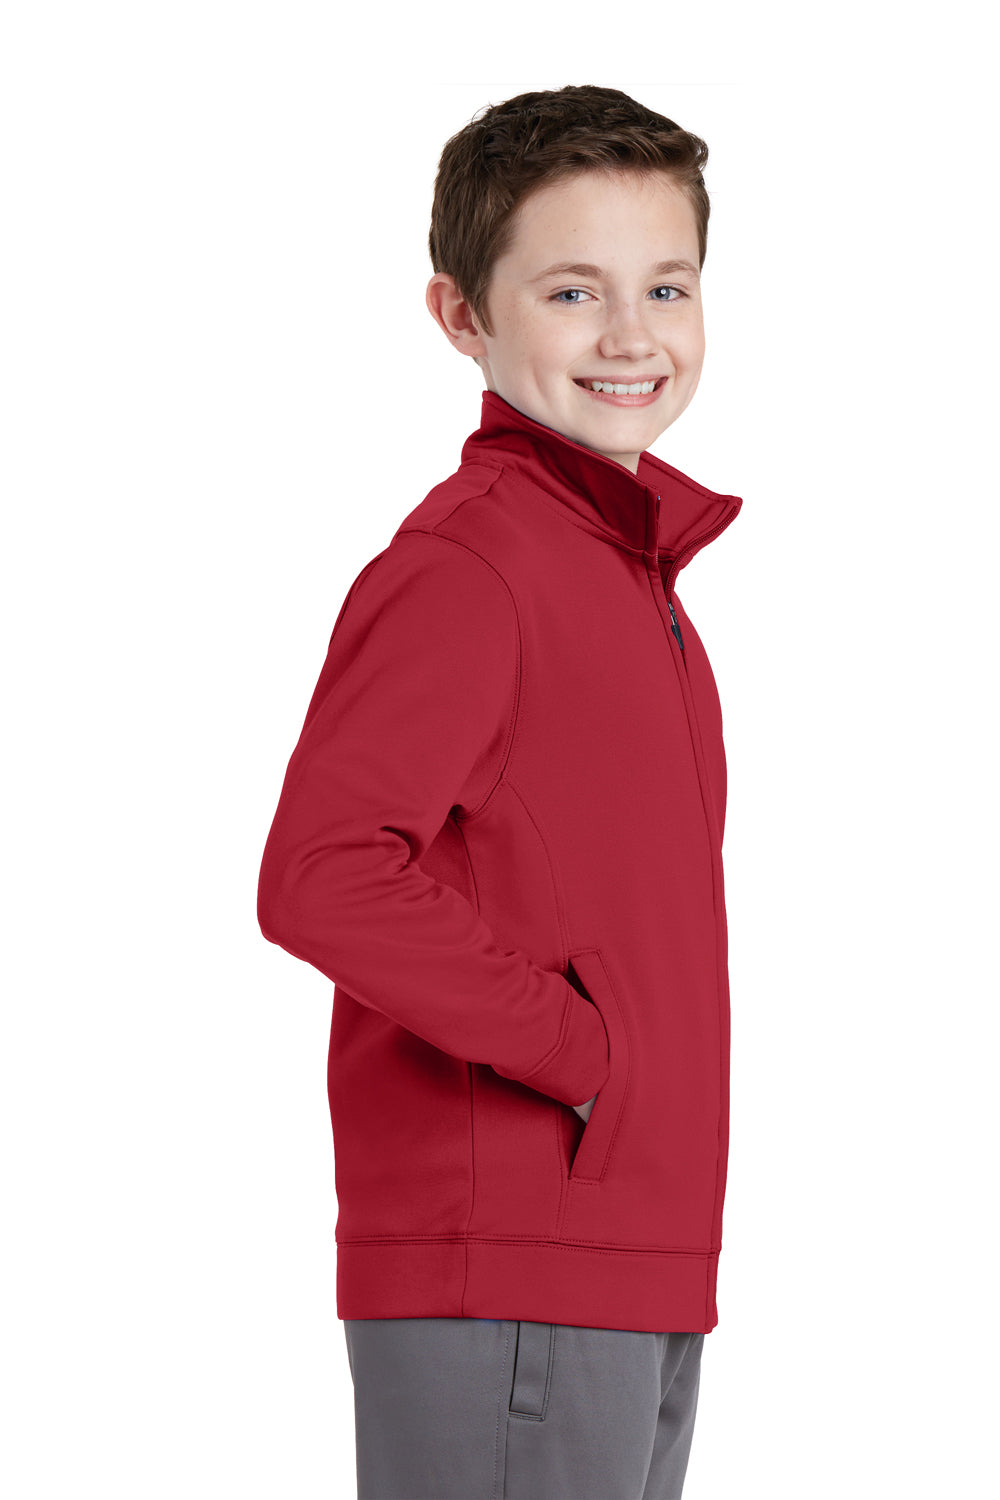 Sport-Tek YST241 Youth Sport-Wick Moisture Wicking Fleece Full Zip Sweatshirt Red Side